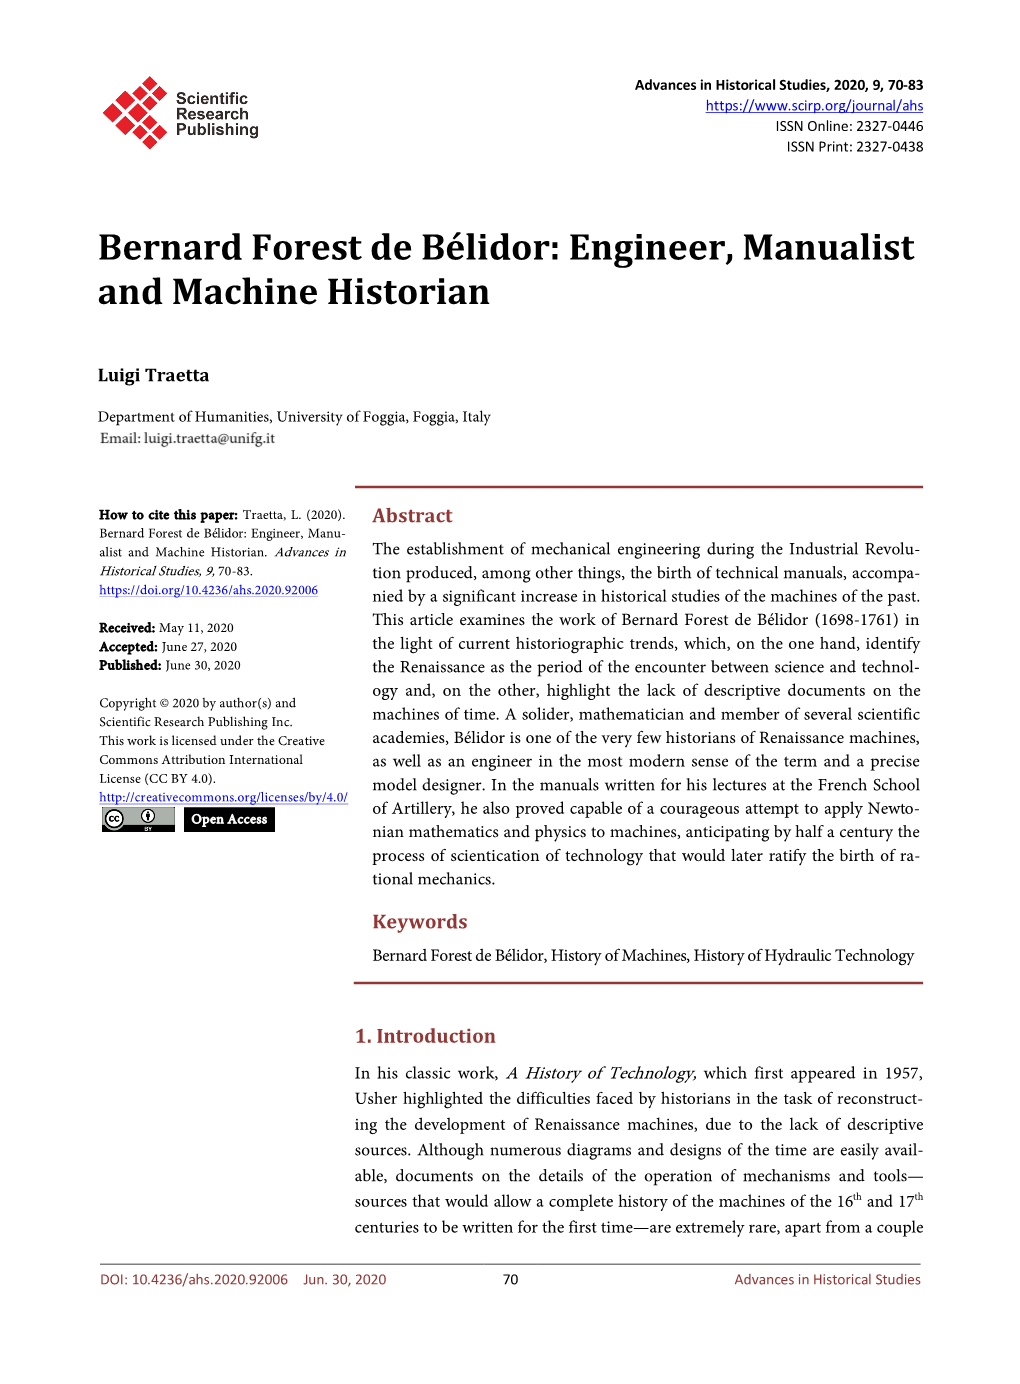 Bernard Forest De Bélidor: Engineer, Manualist and Machine Historian